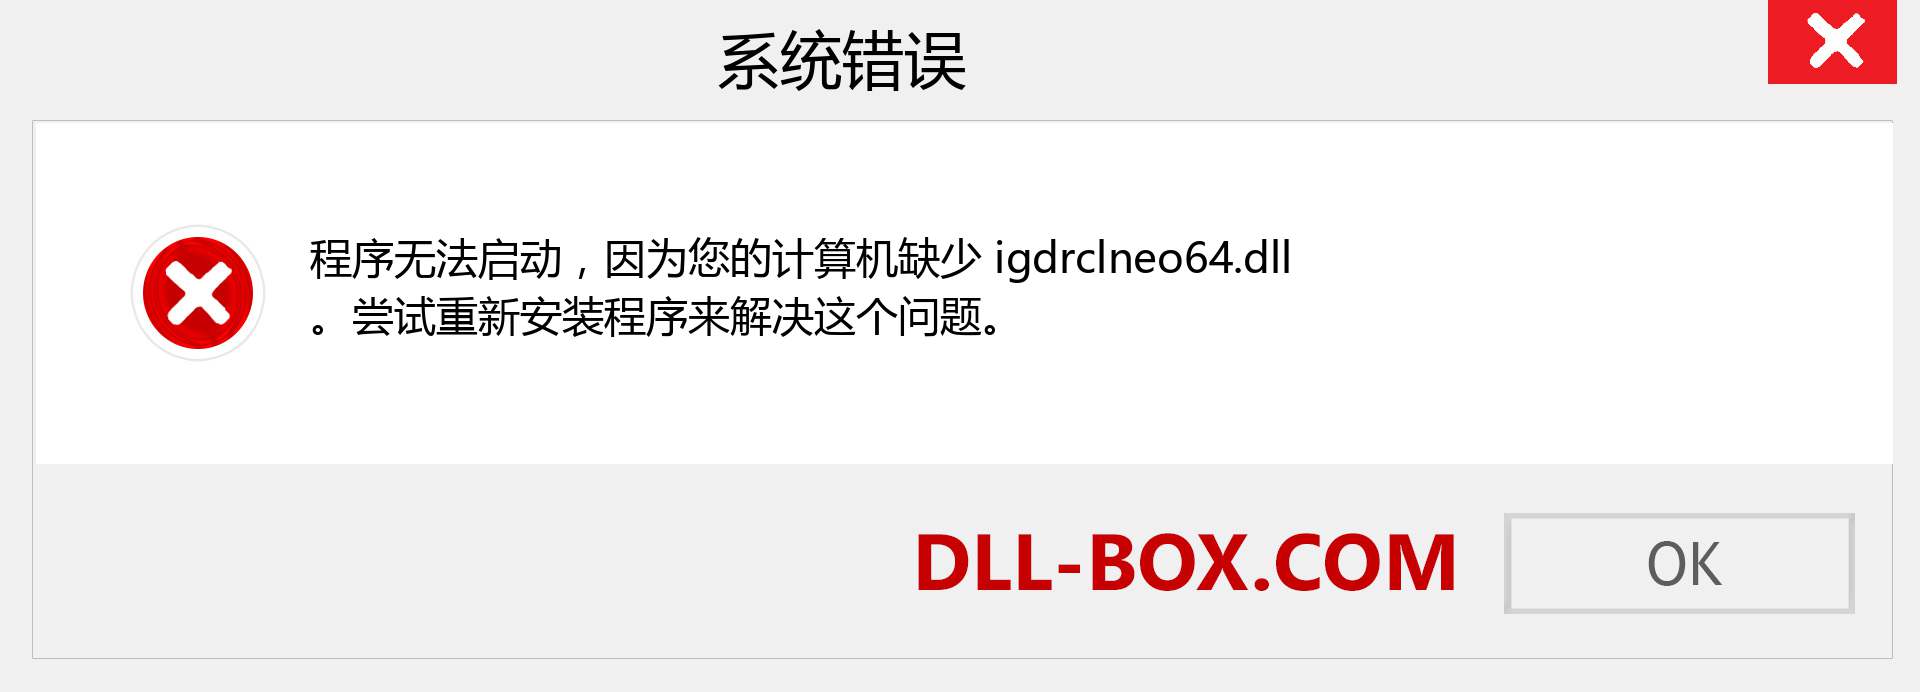 igdrclneo64.dll 文件丢失？。 适用于 Windows 7、8、10 的下载 - 修复 Windows、照片、图像上的 igdrclneo64 dll 丢失错误